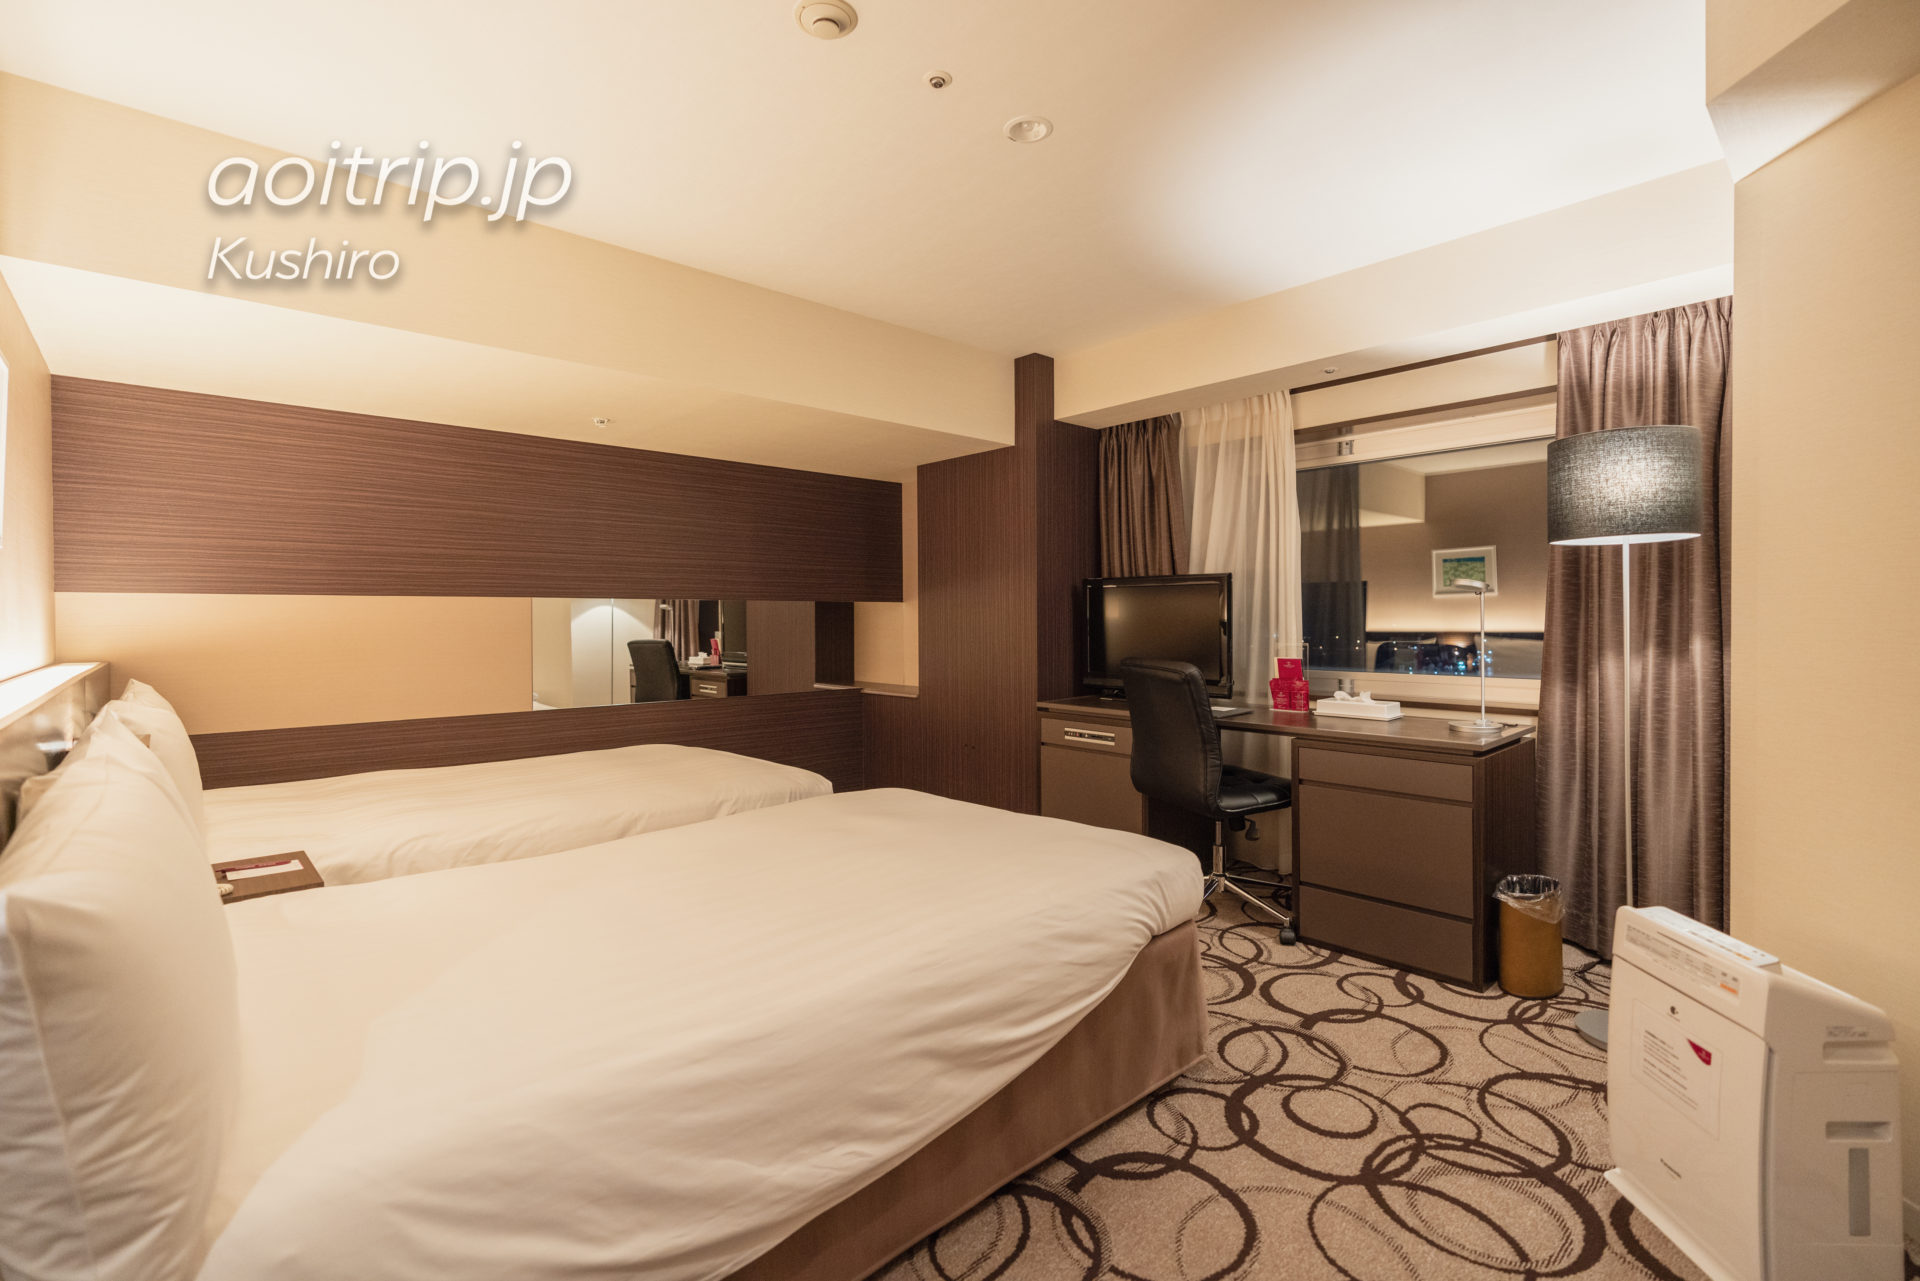 ANAクラウンプラザホテル釧路 ANA Crowne Plaza Hotel Kushiro コーナーツインルームの客室